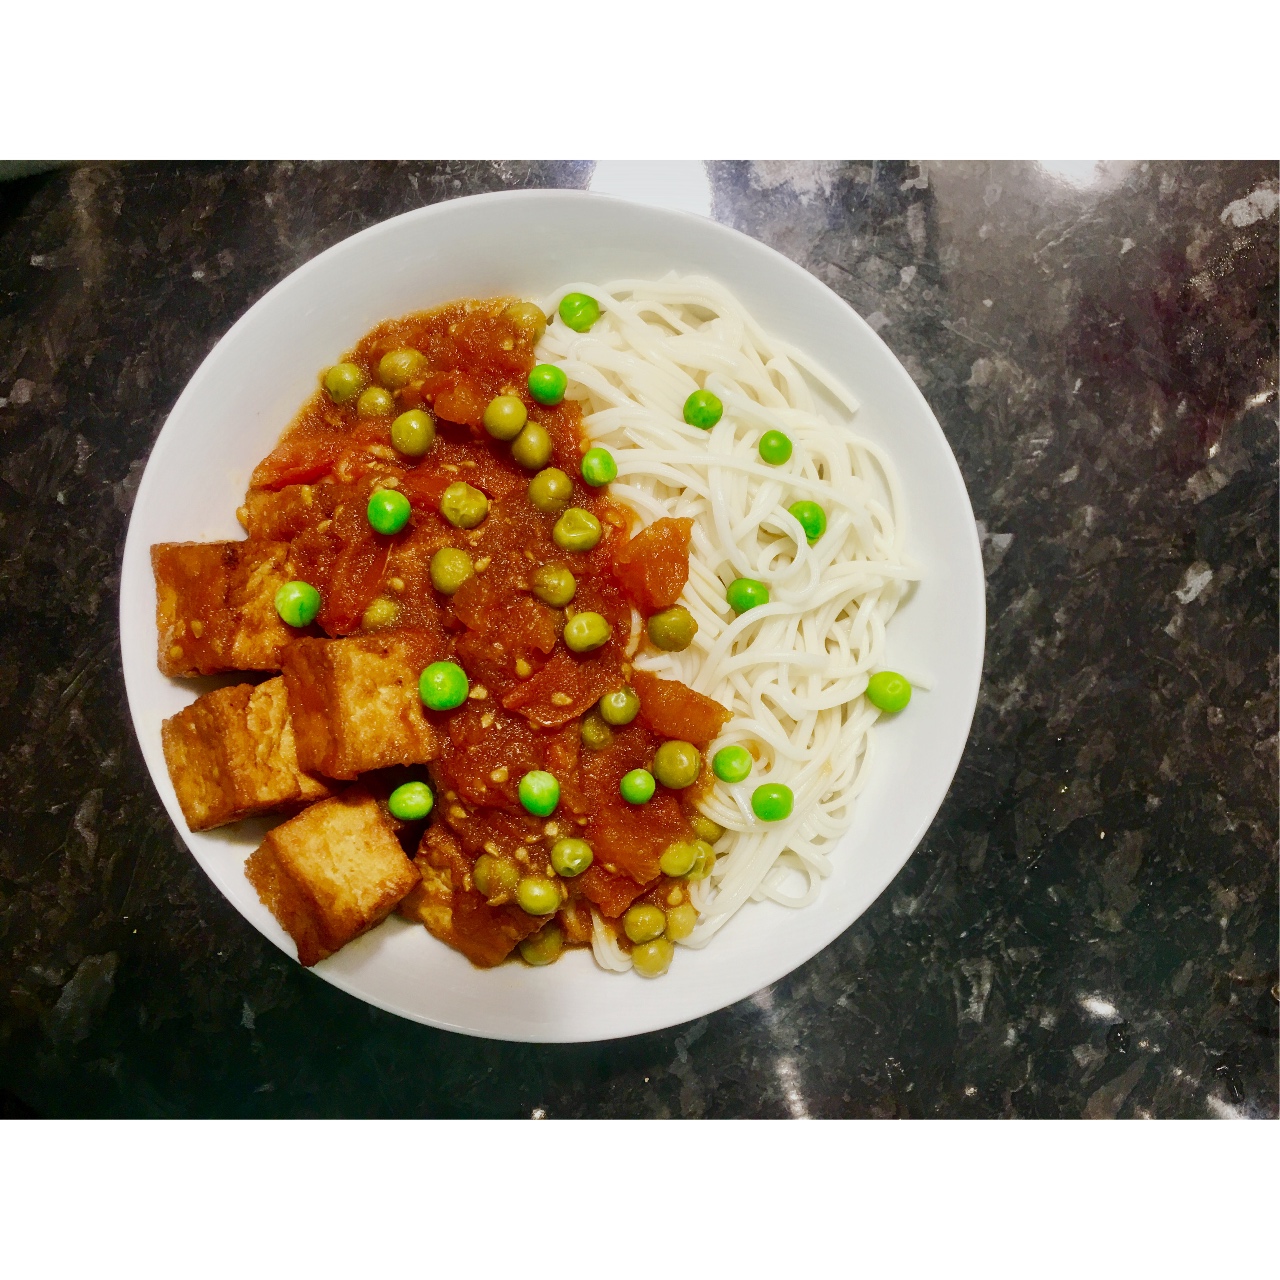 番茄烧豆腐面(Noodle with Braised Firm Tofu with Tomatoes)